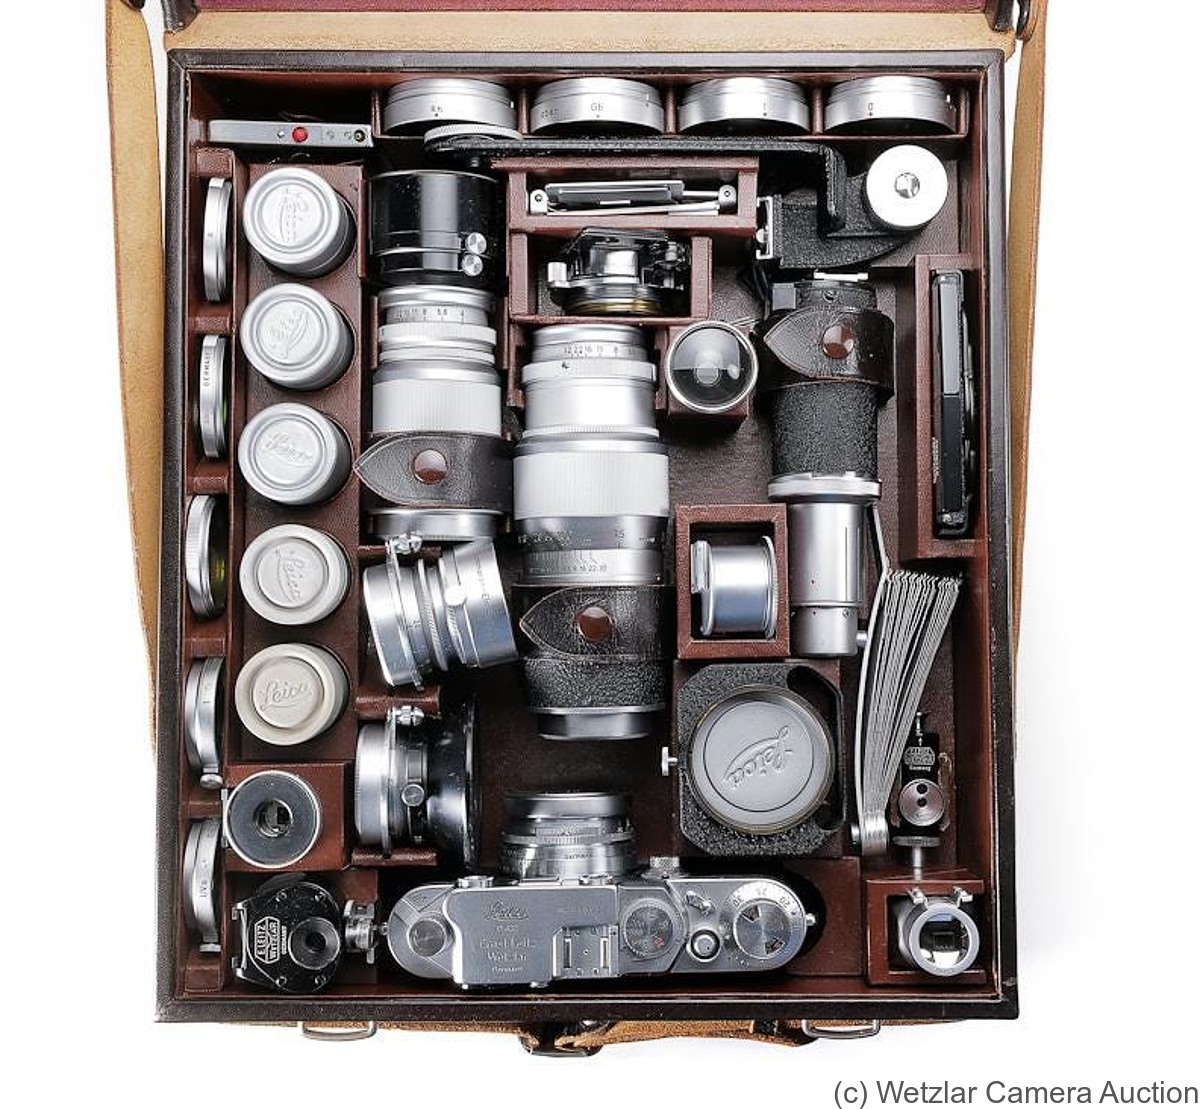 Leitz: Leica IIIf outfit camera